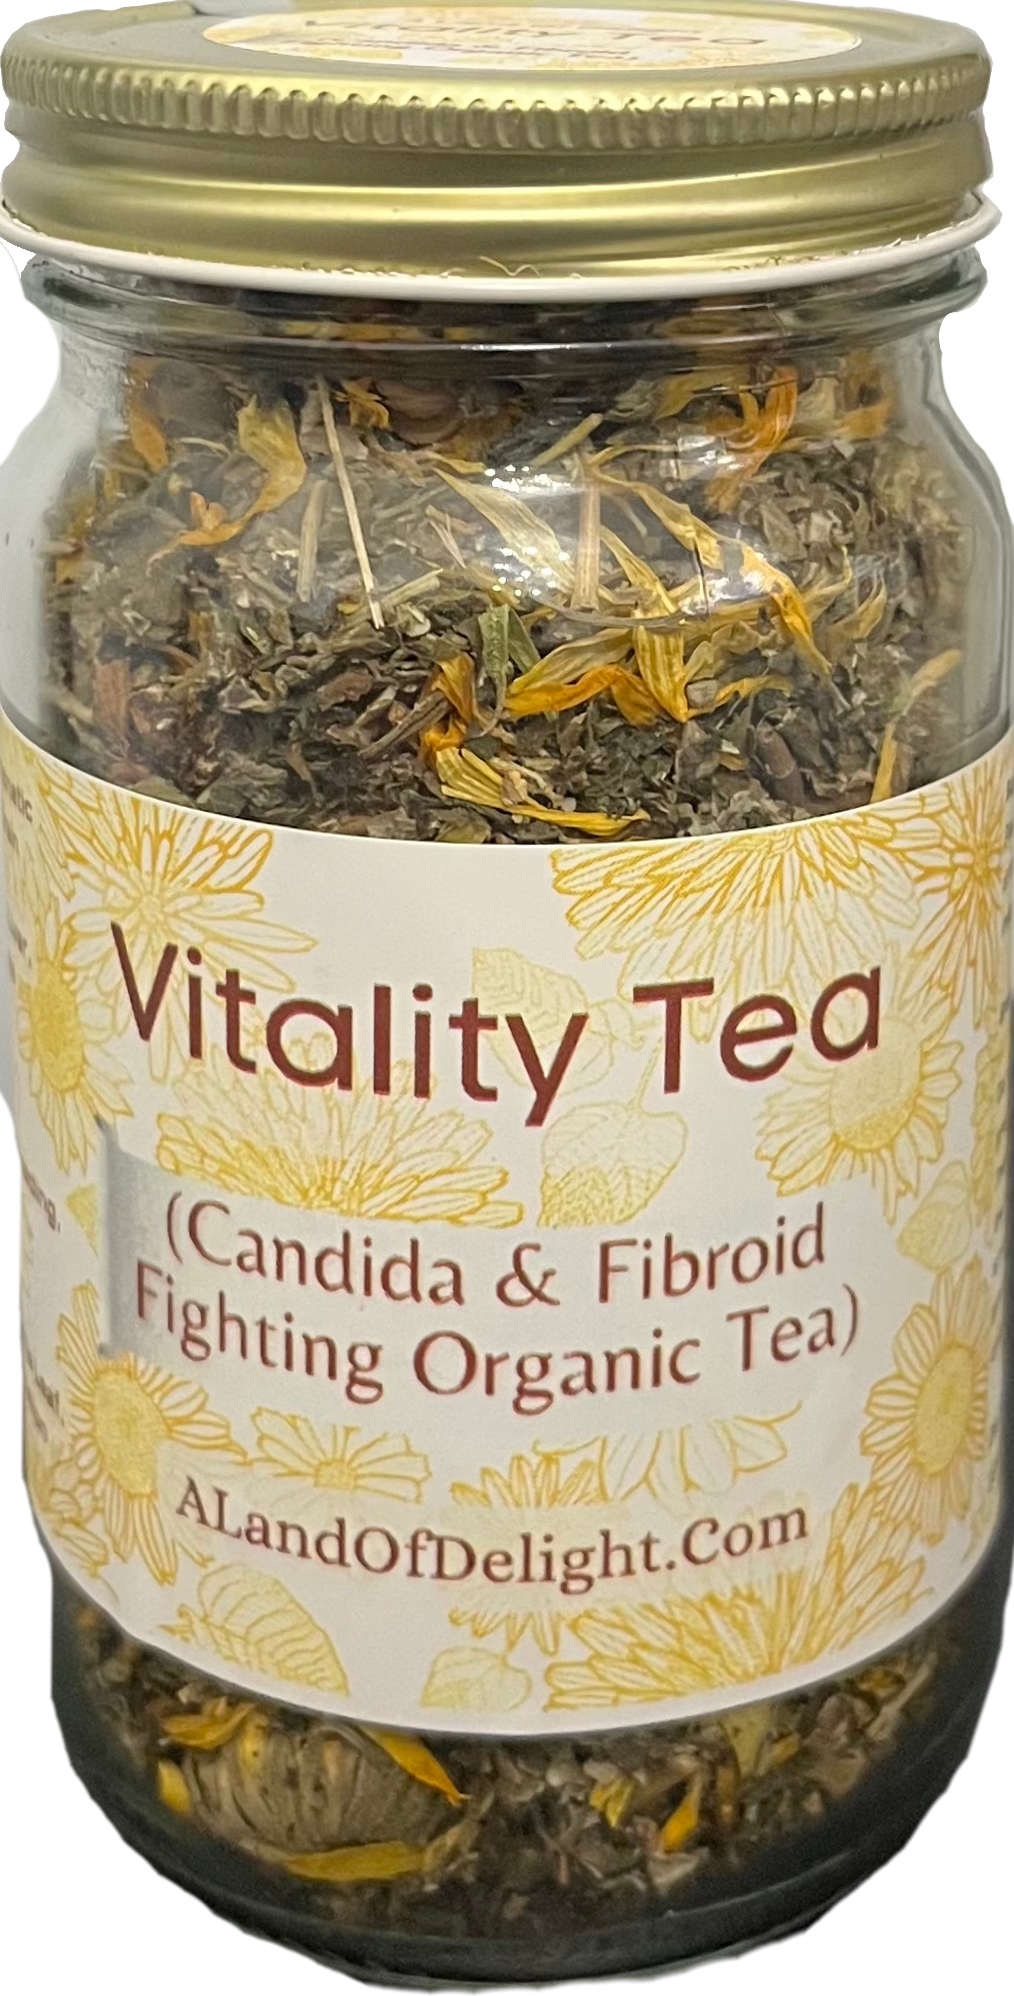 Vitality Loose Leaf Organic Tea (Candida & Fibroid Fighting)